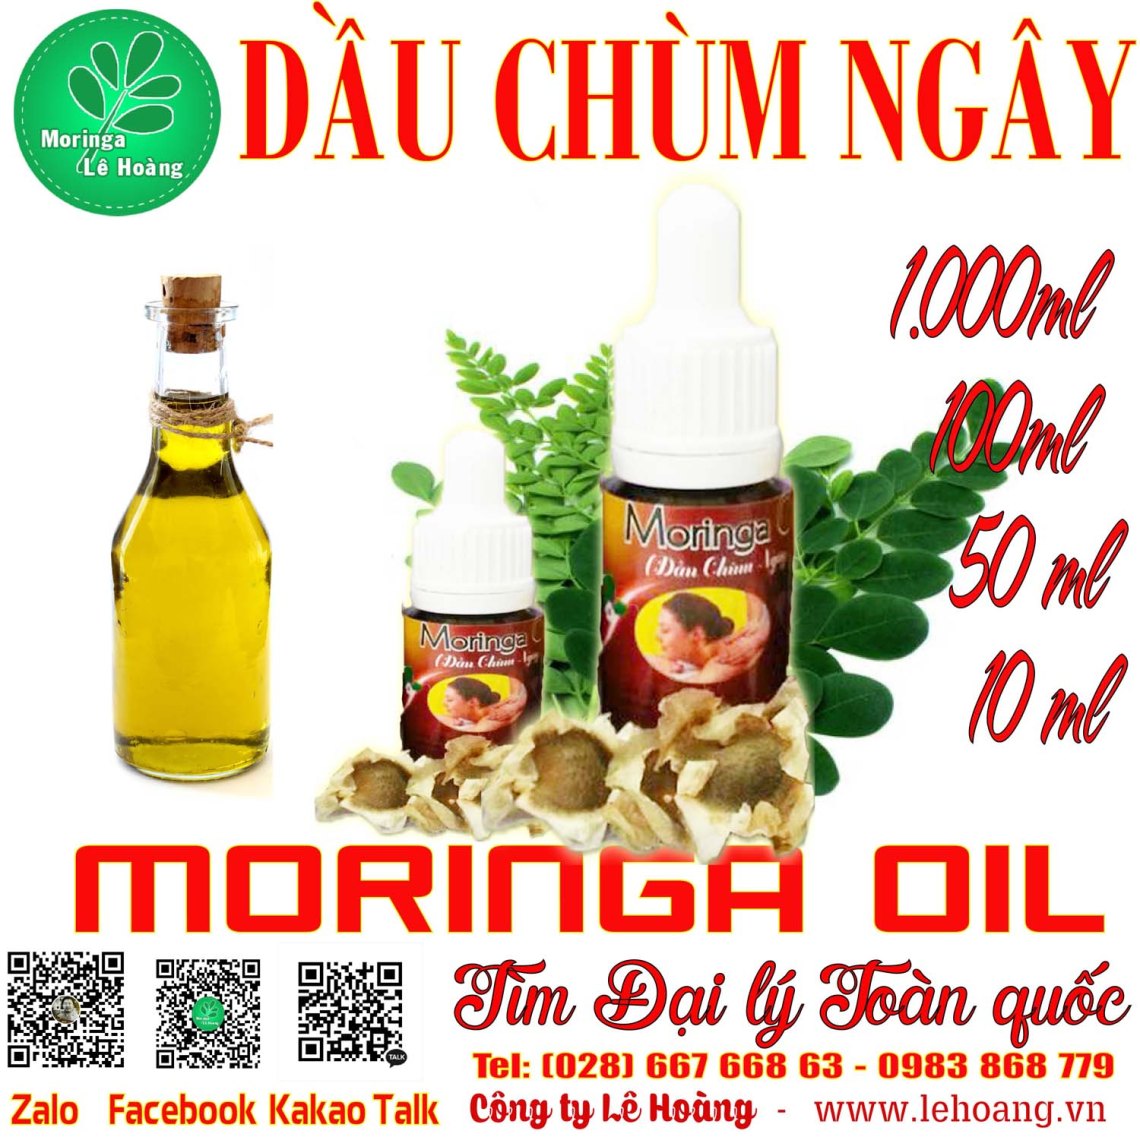 Dầu Chùm ngây (Moringa Oil)